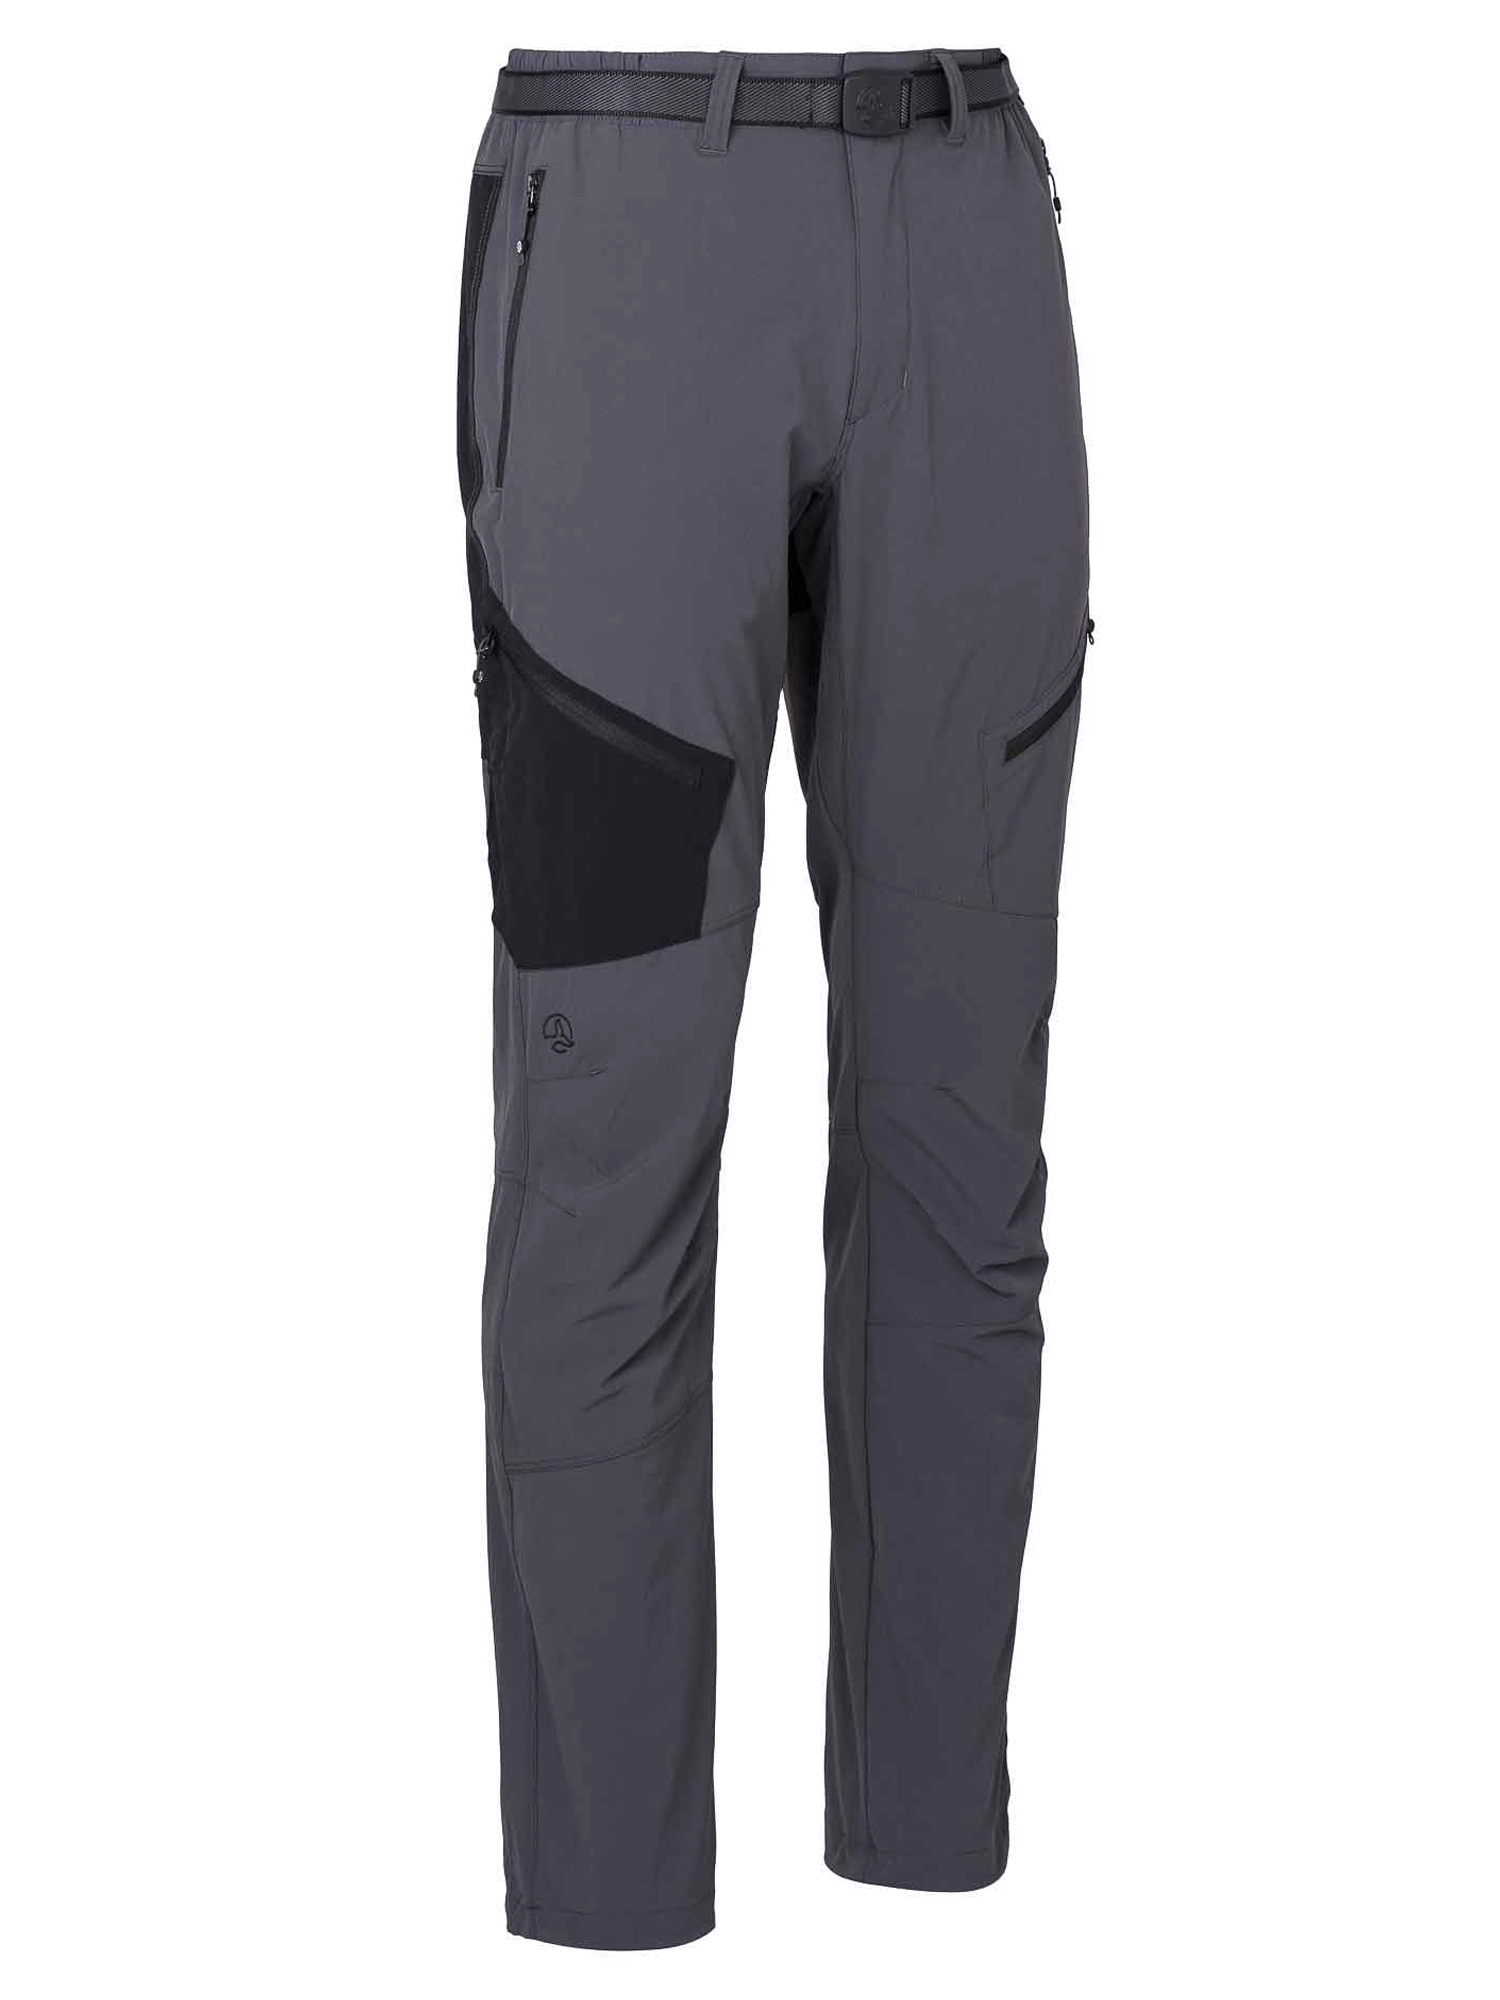 Спортивные брюки мужские Ternua Torlok Pt M серые L